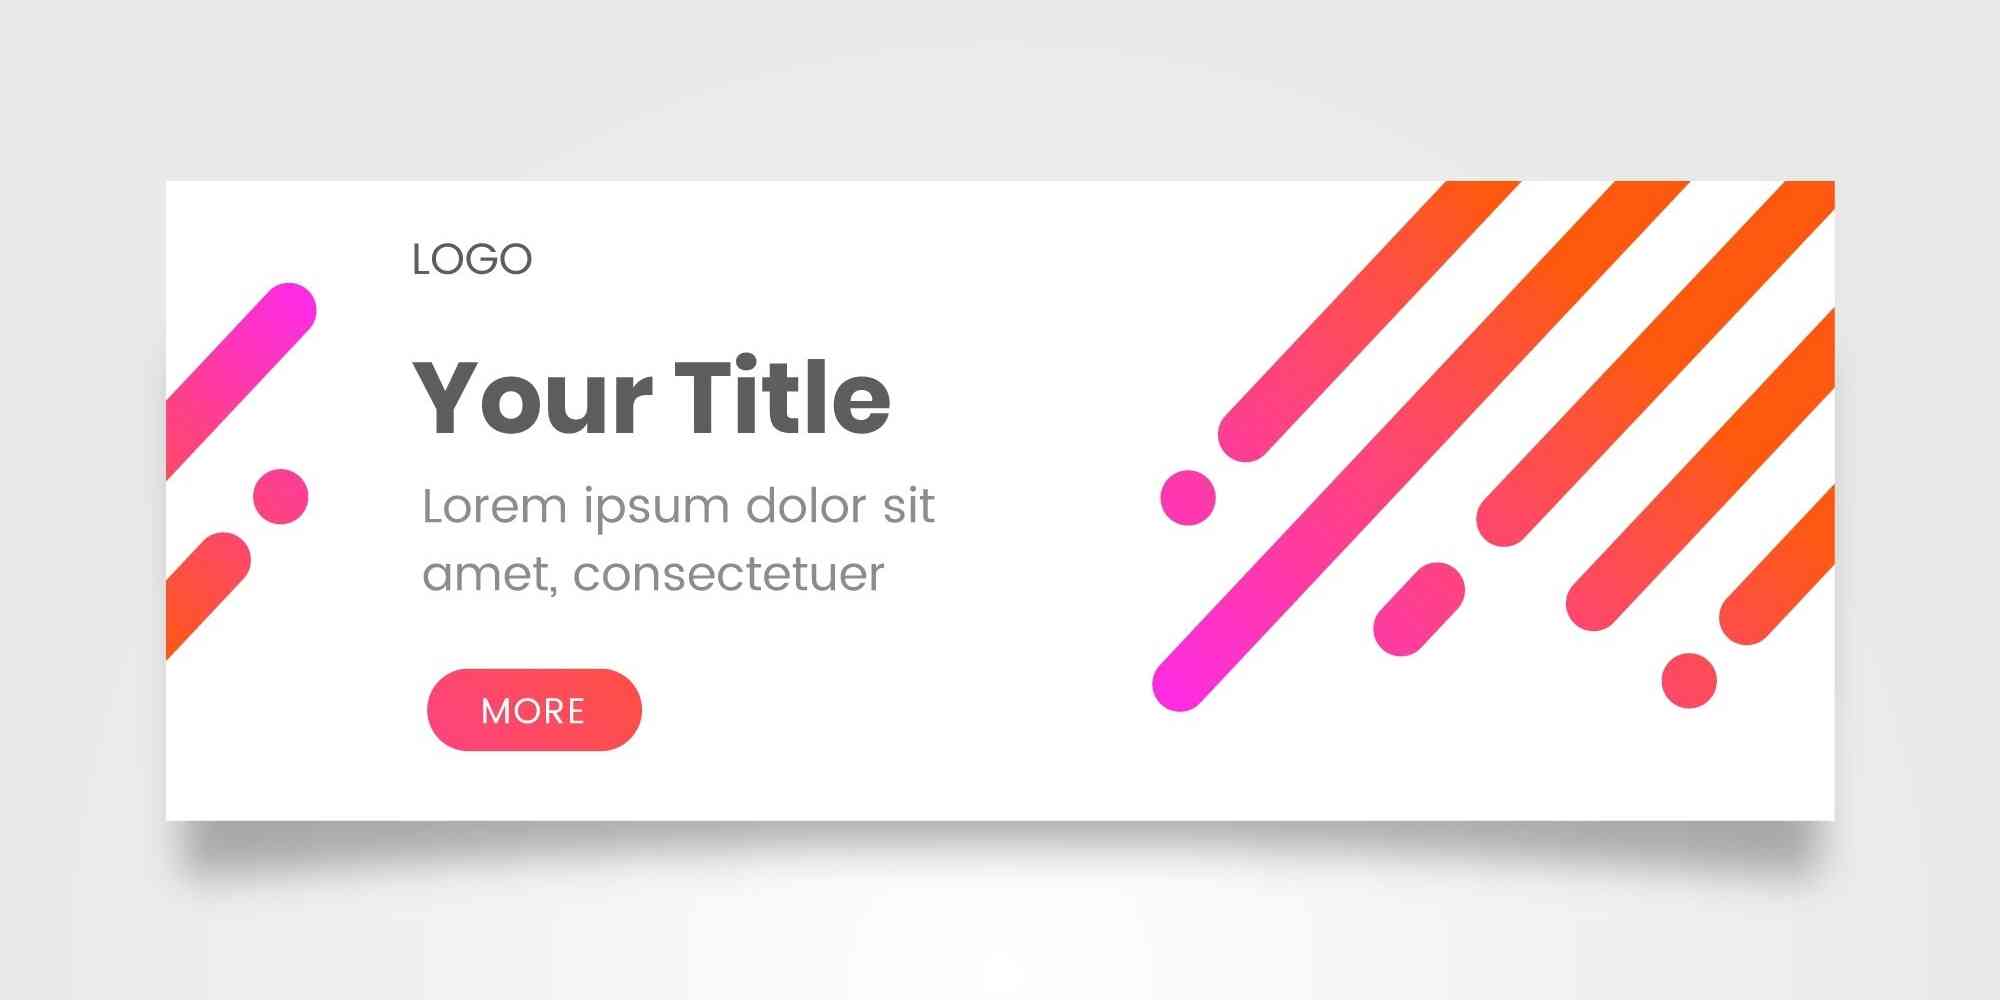 图中是一个宽幅的白色背景，上面有橙色和粉色的斜线图案，中间是黑色字体Your Title，下方是红色按钮MORE。